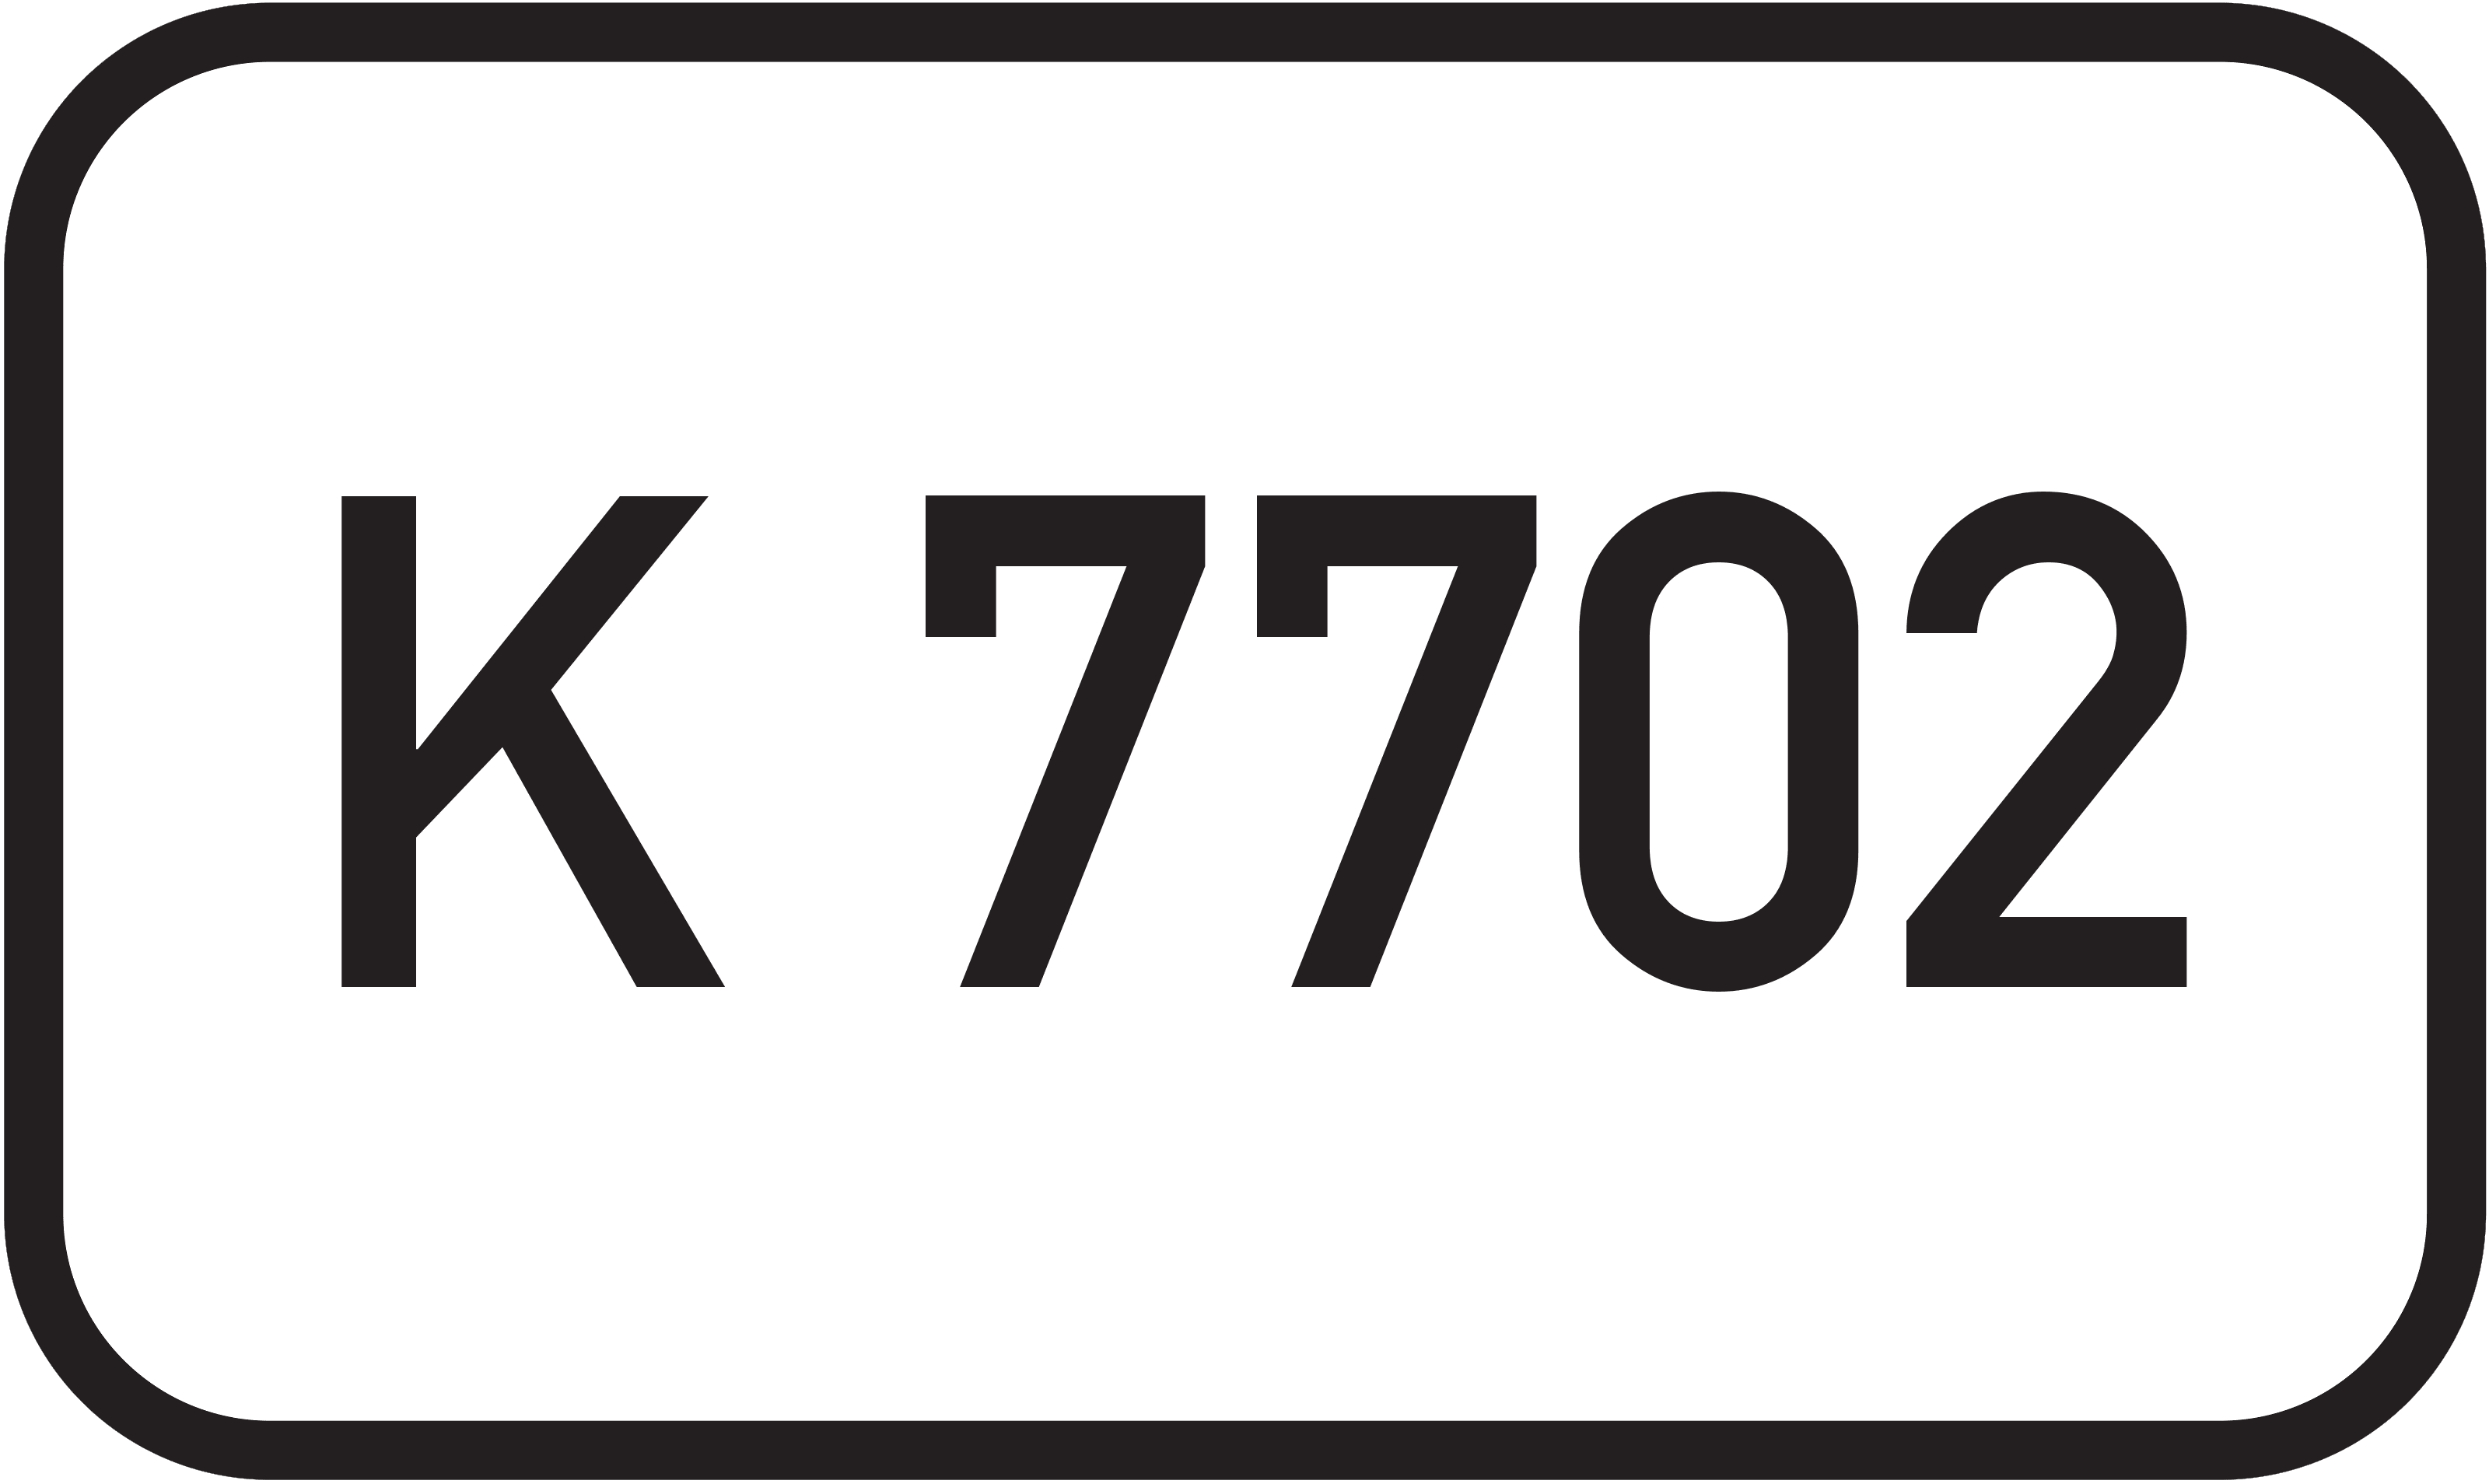 Kreisstraße K 7702